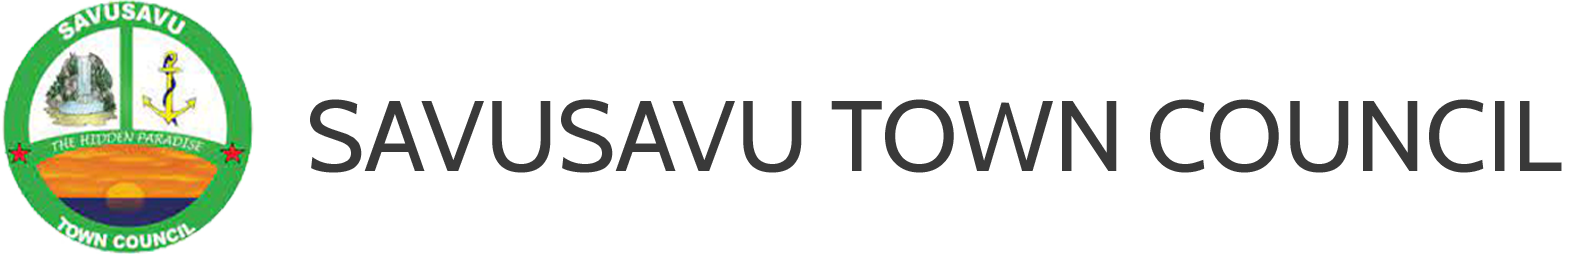 Savusavu Town Council